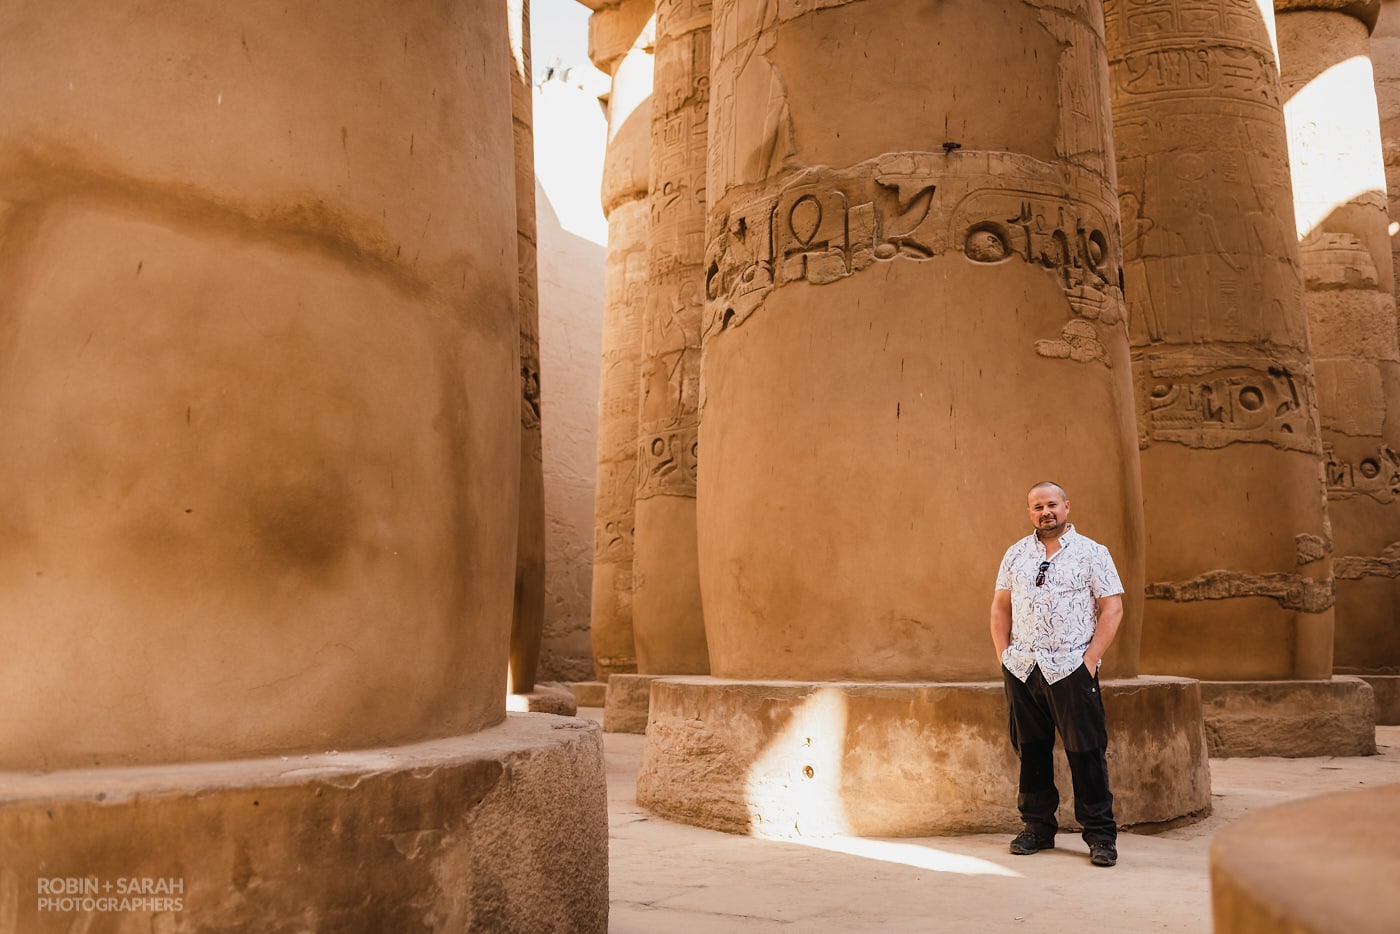 At Karnak, Egypt